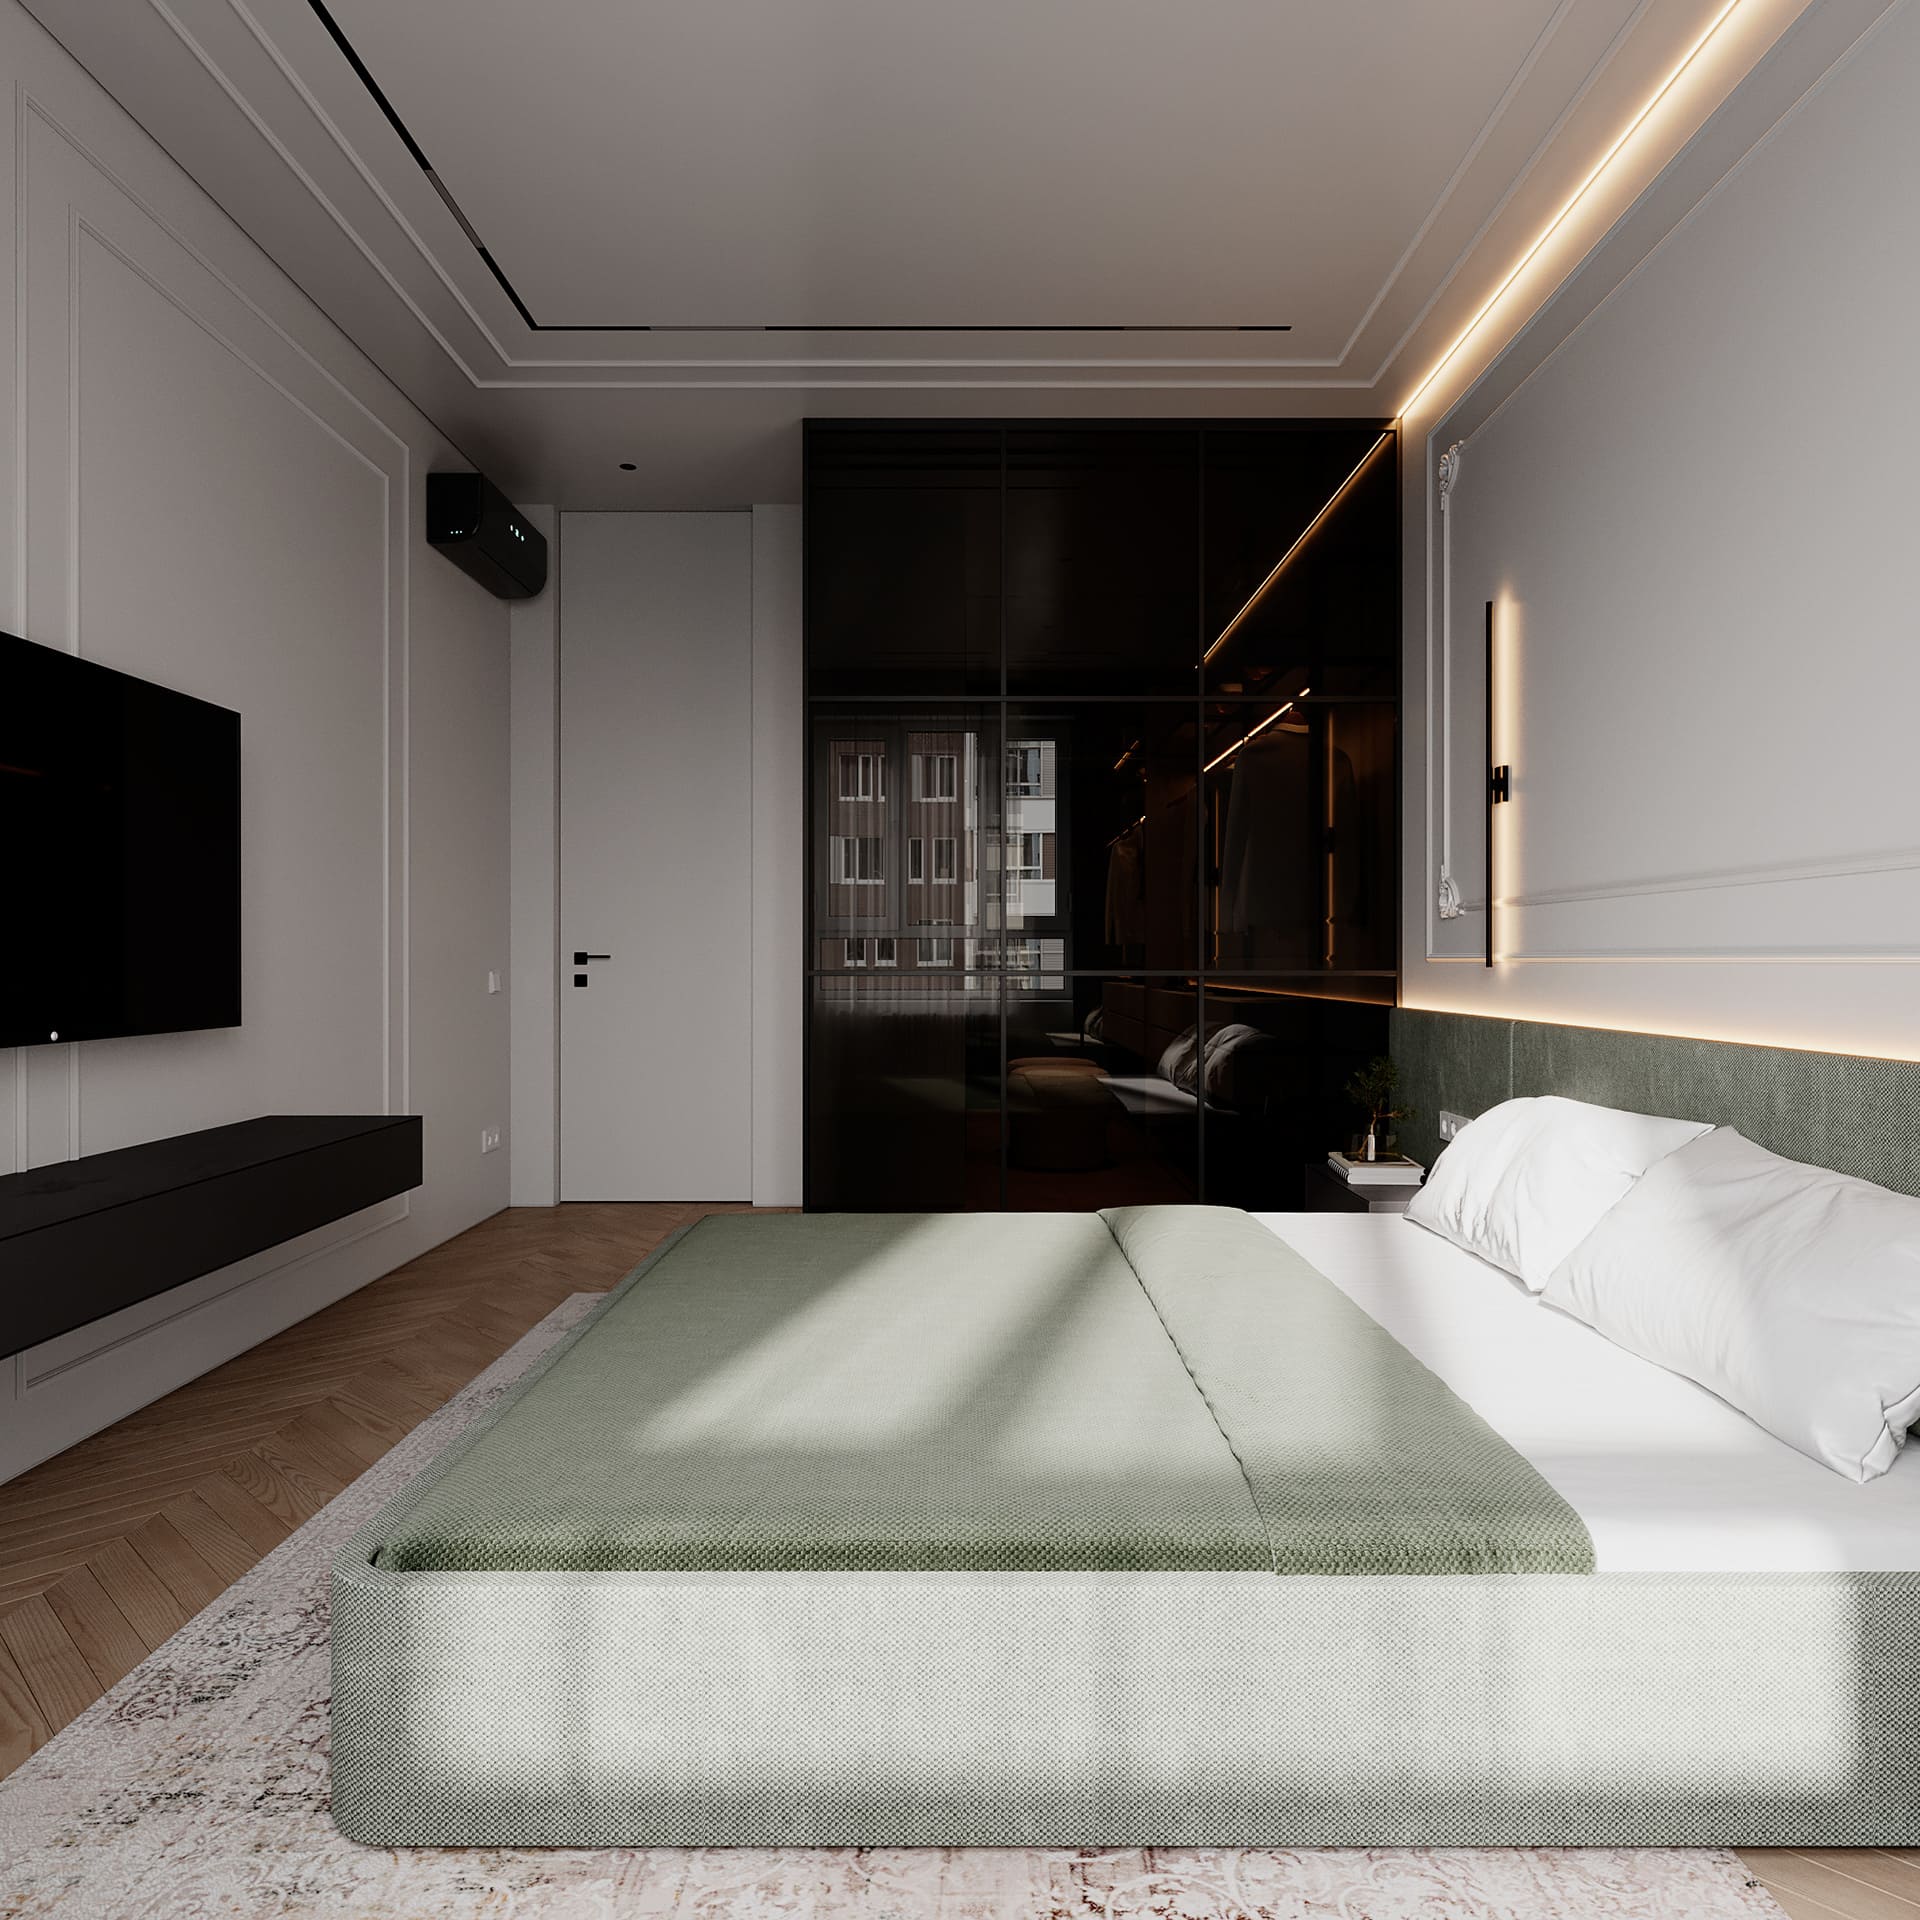 Prestigious bright apartment in minimalist style